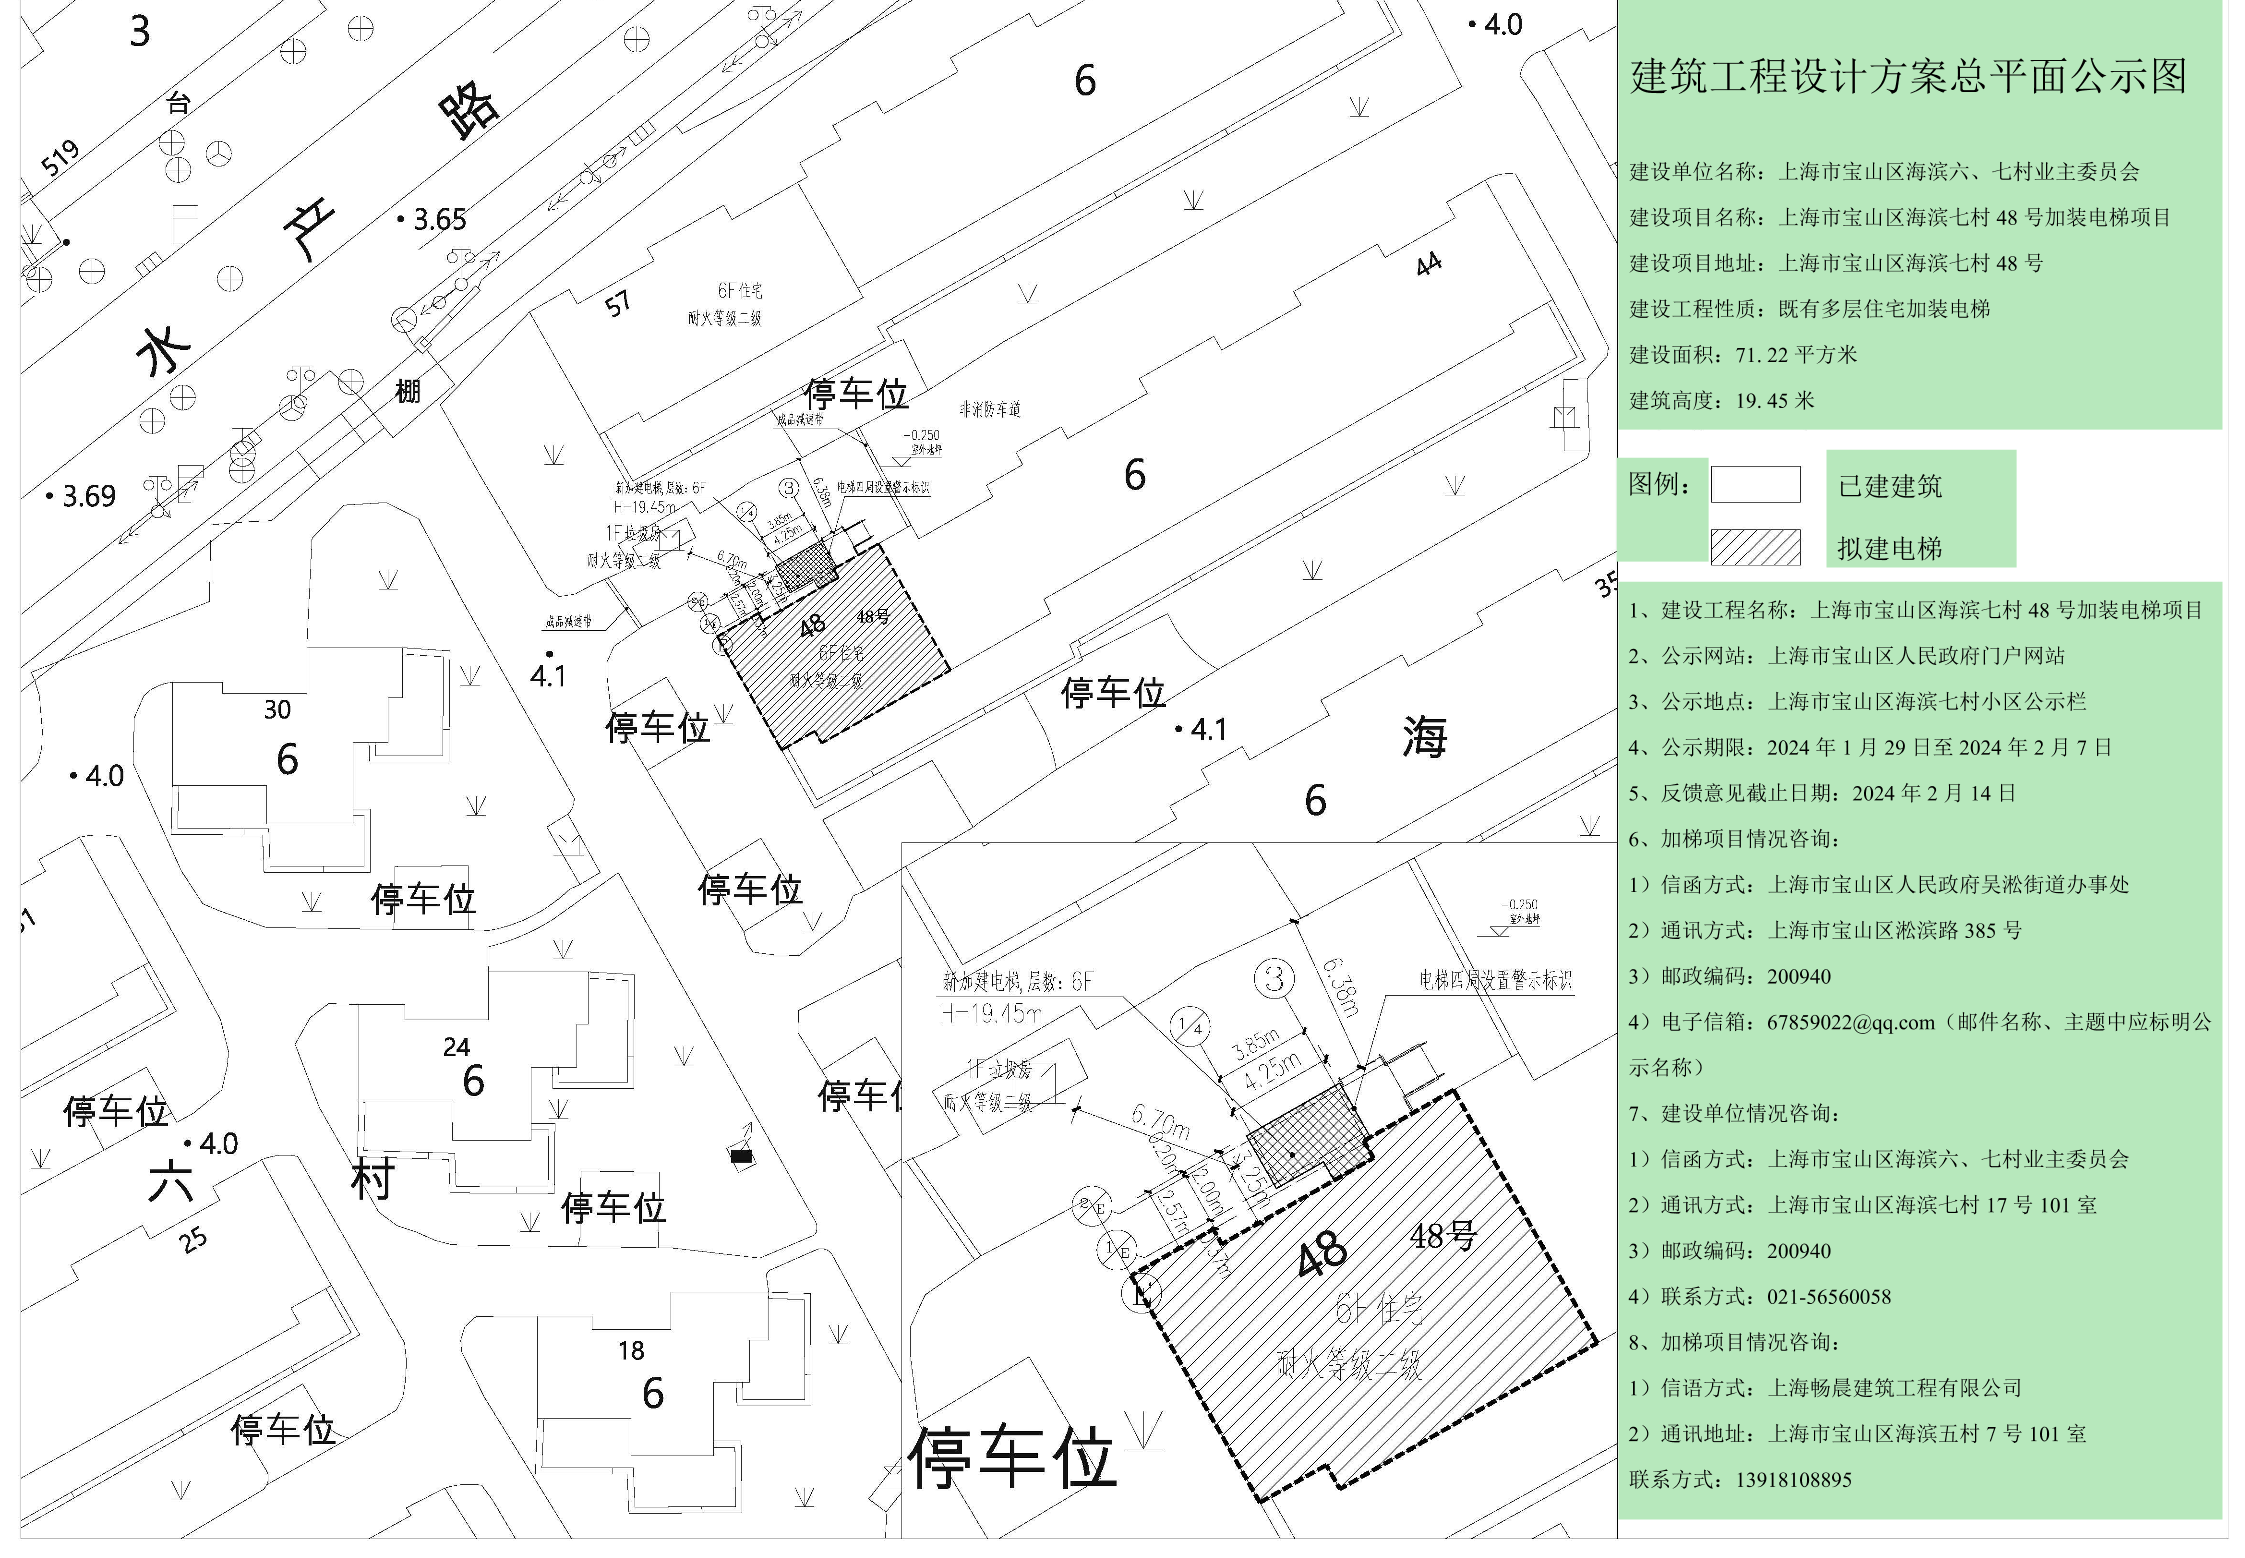 海滨七村48号公示图.pdf